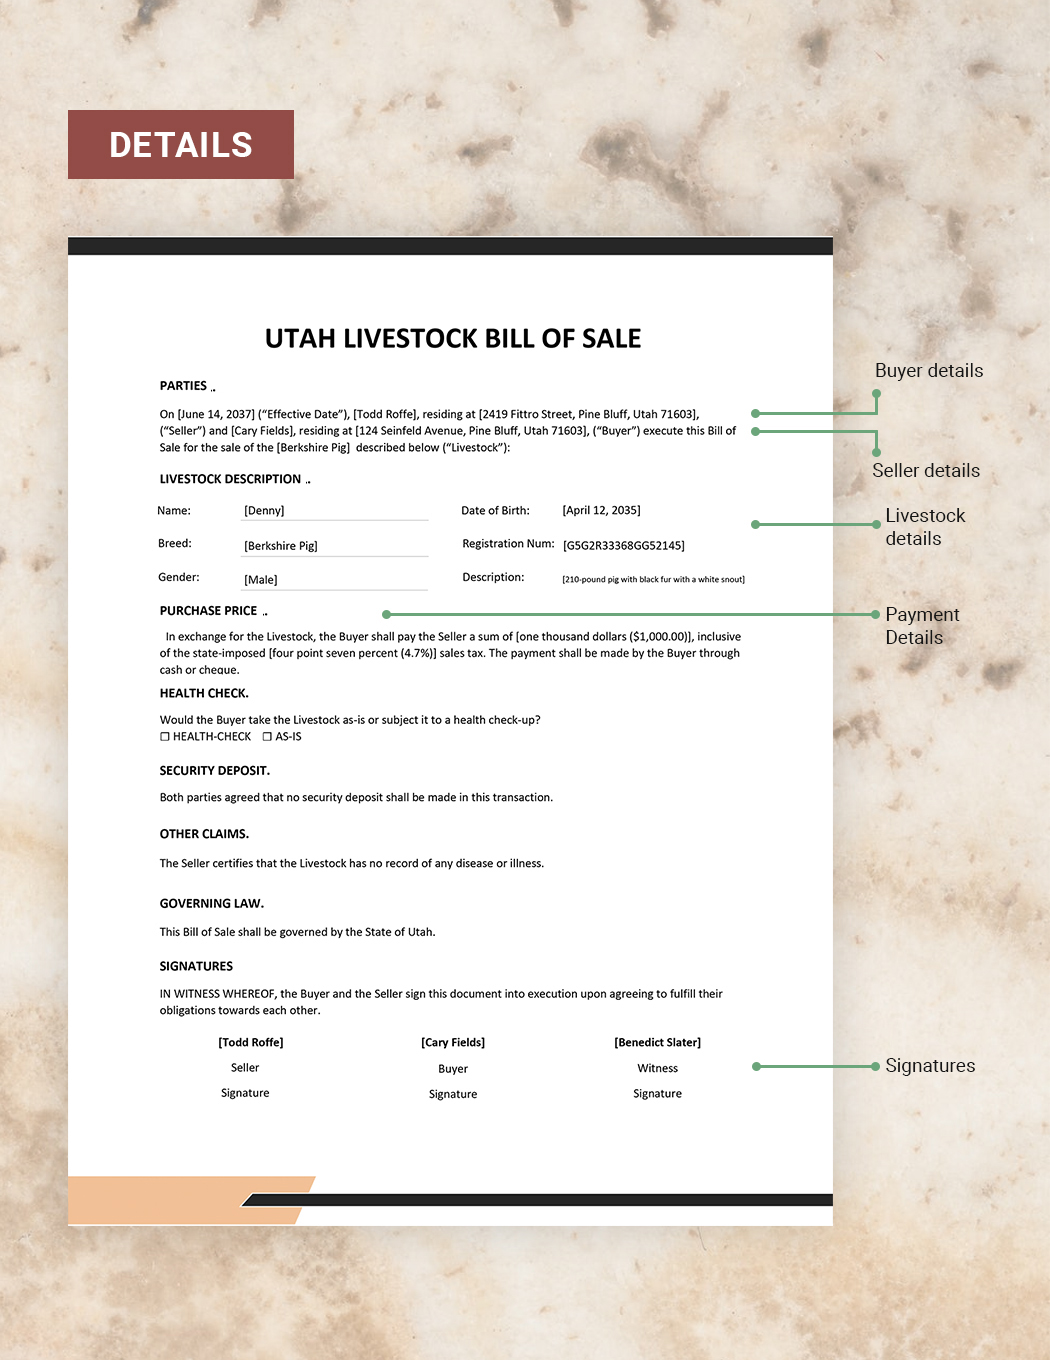 Utah Livestock Bill of Sale Template